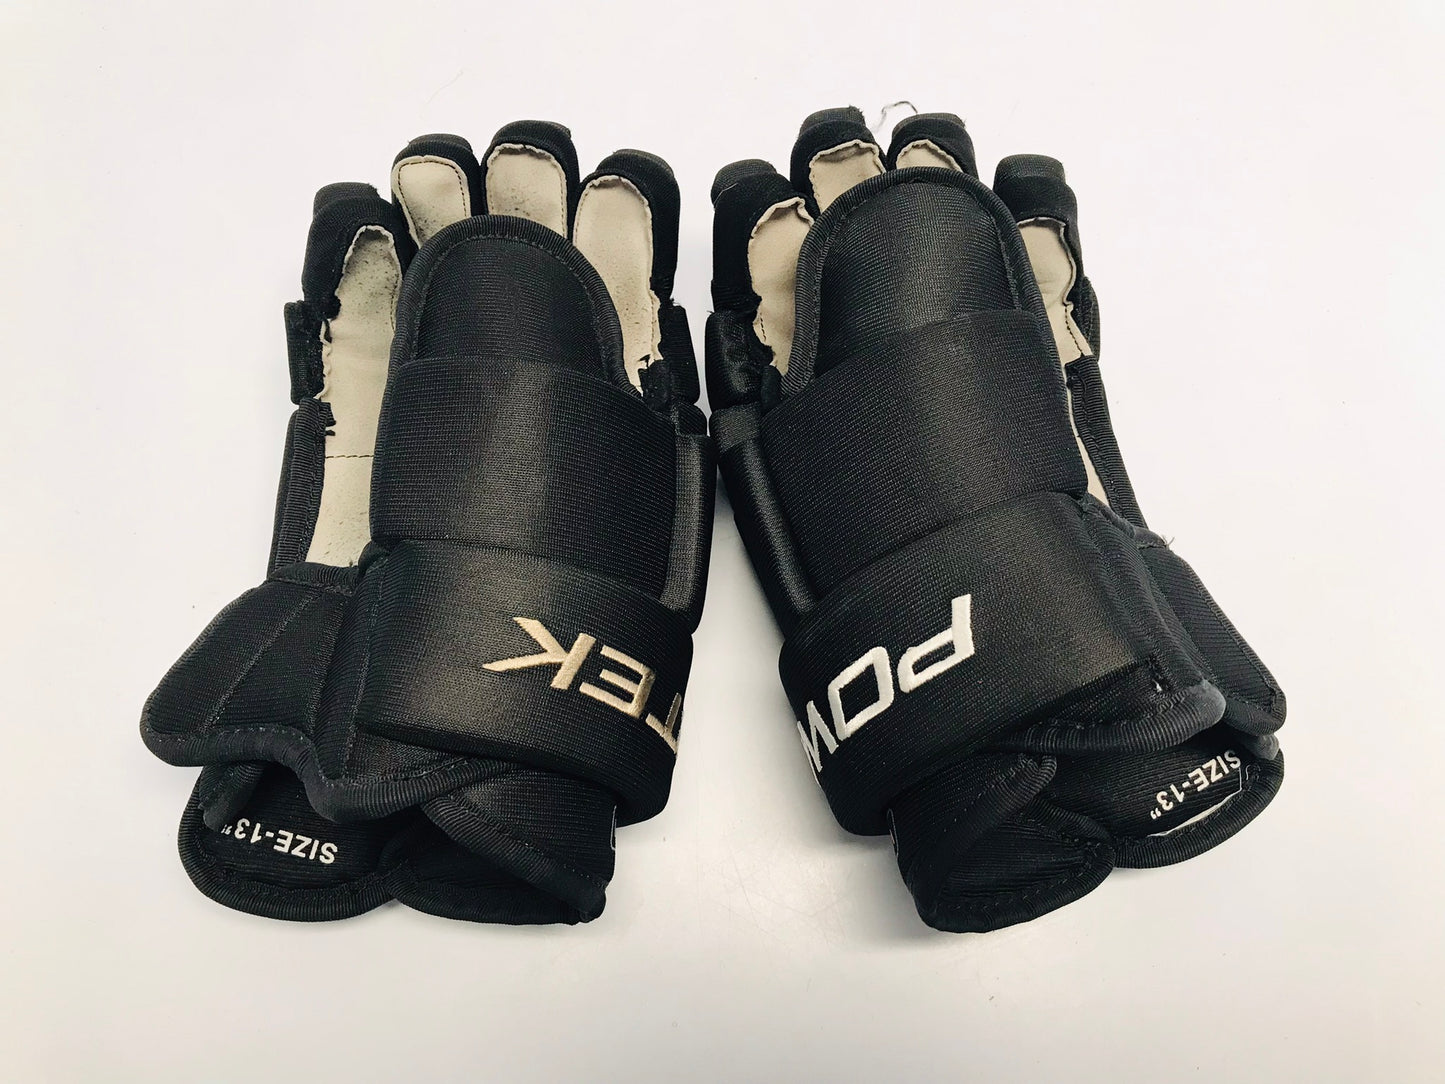 Hockey Gloves Men's Size 13 inch PowerTek Black Like New